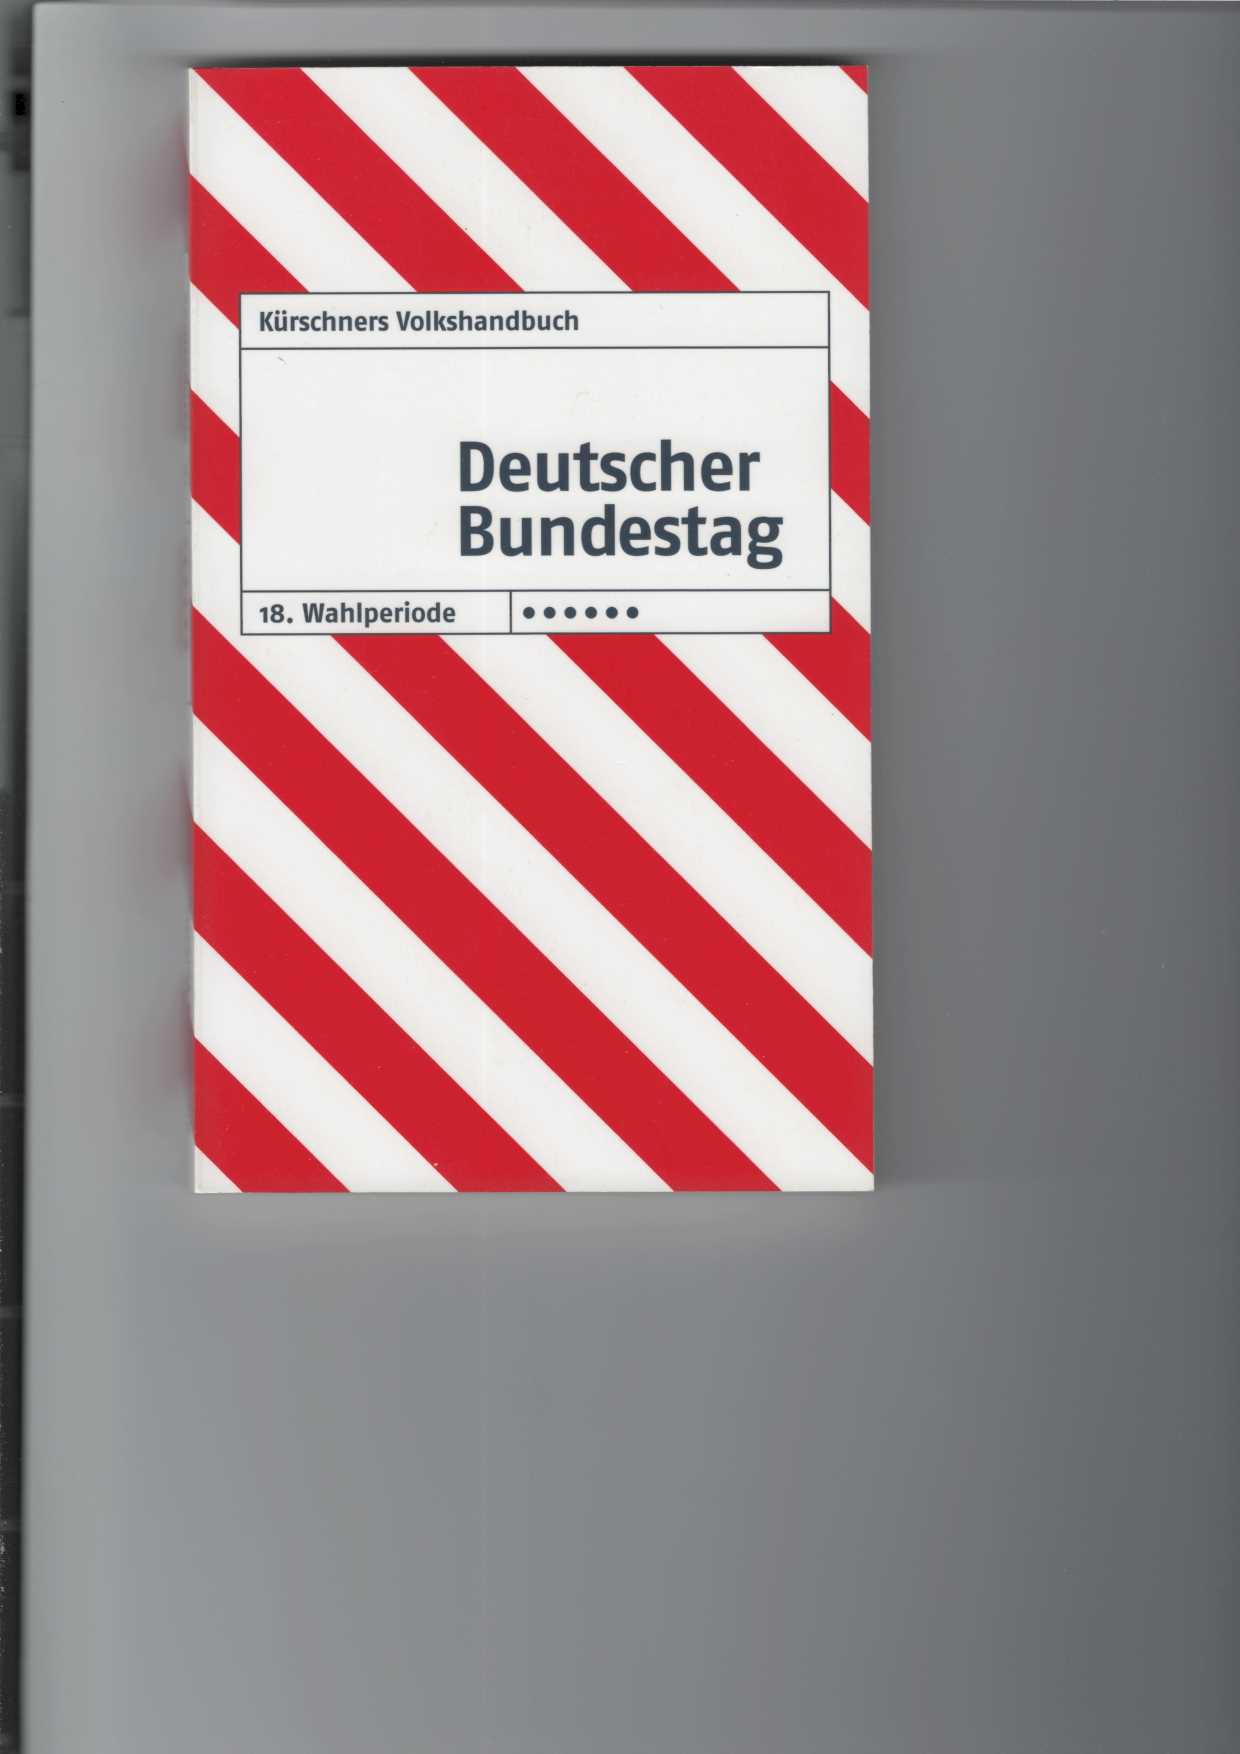 Deutscher Bundestag : 18. Wahlperiode: 2013 - 2017. Kürschners Volkshandbuch. Sonderdruck für den Deutschen Bundestag - Referat Öffentlichkeitsarbeit -. Mit Abbildungen.